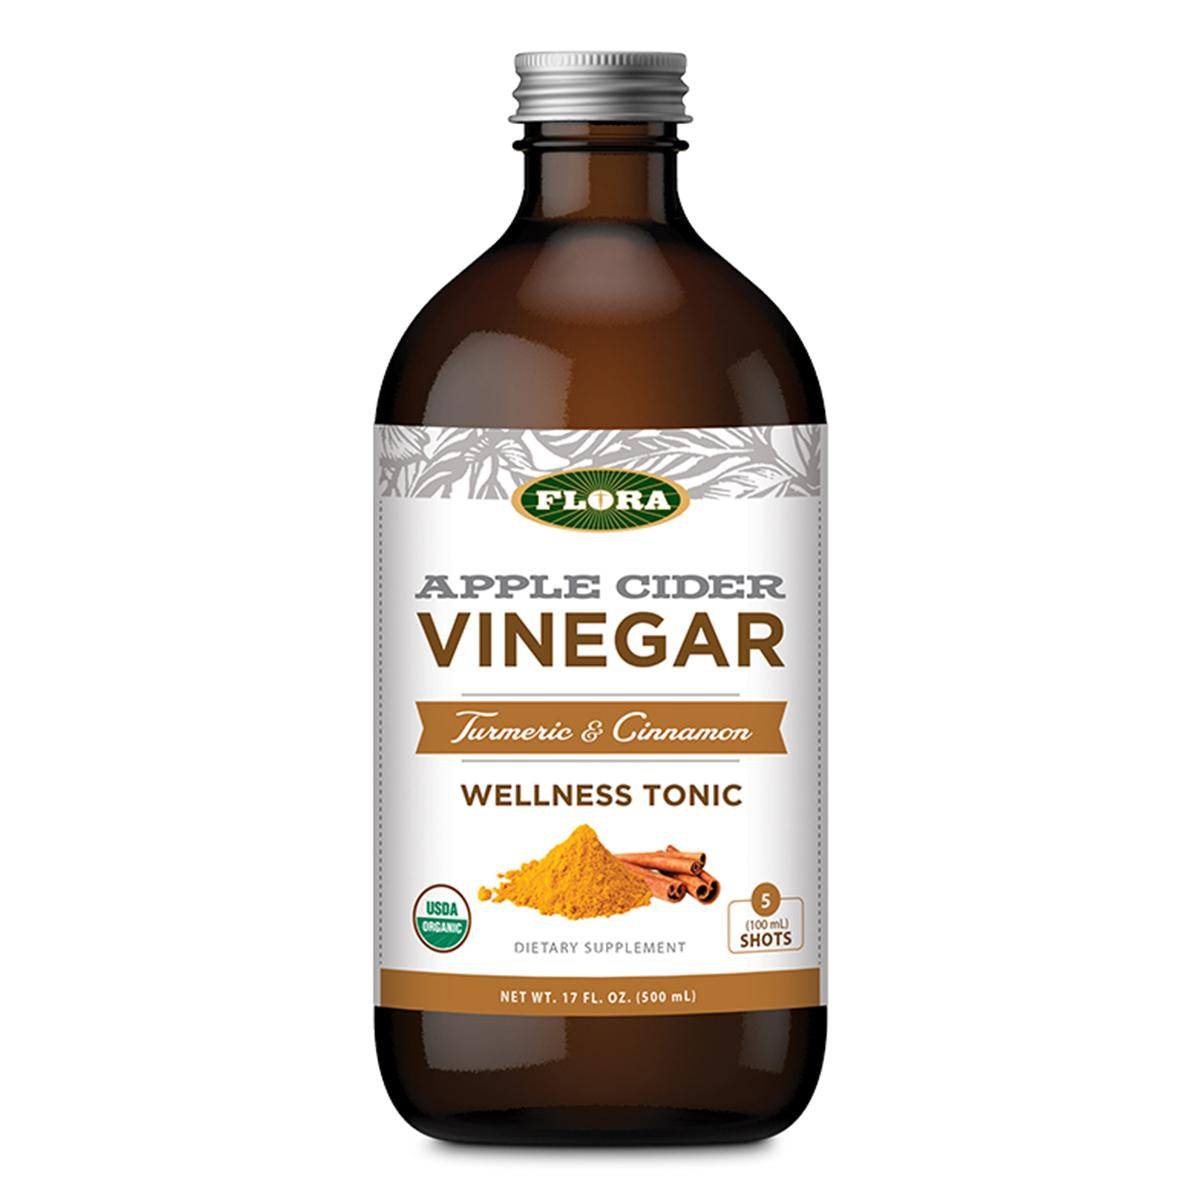 Primary image of Apple Cider Vinegar Wellness Tonic (Turmeric + Cinnamon)